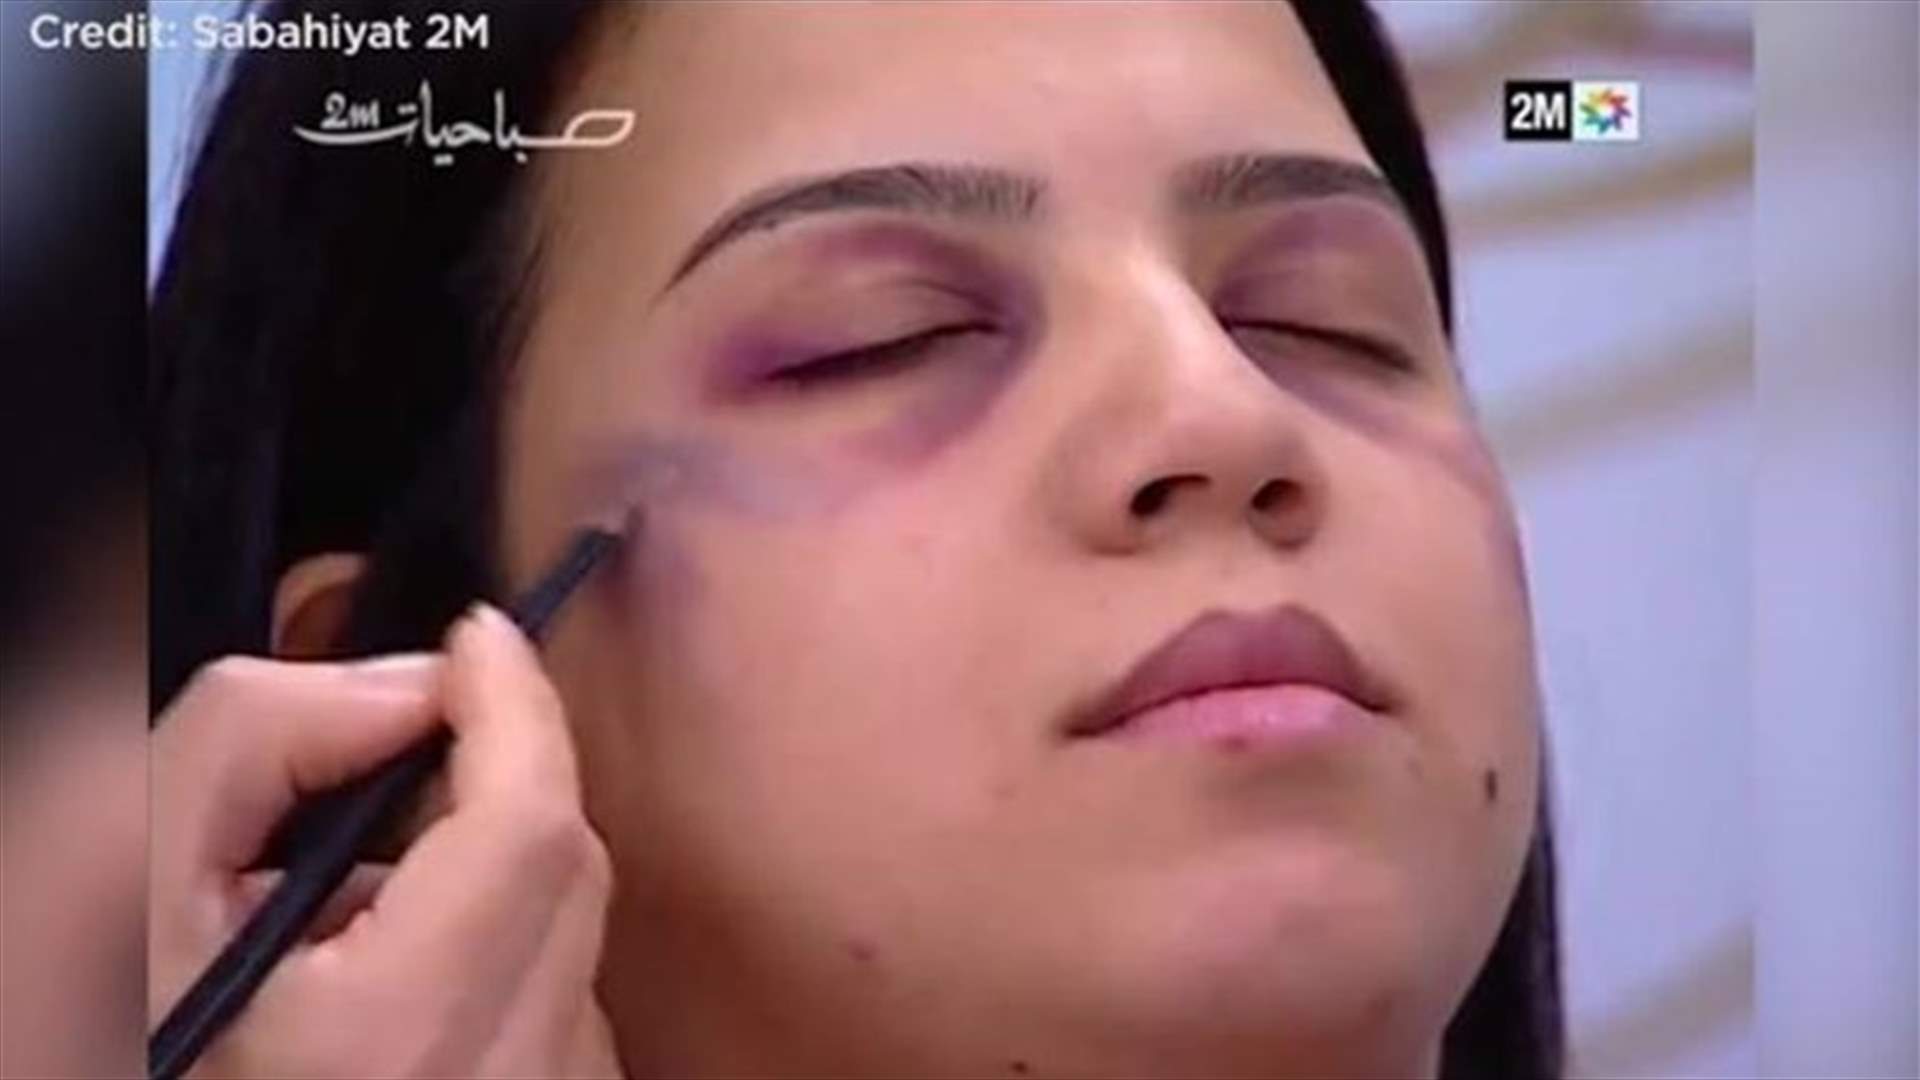 بالفيديو: قناة مغربيّة تعتذر لبثّ فقرة &quot;كيفيّة إخفاء آثار العنف المنزلي&quot;